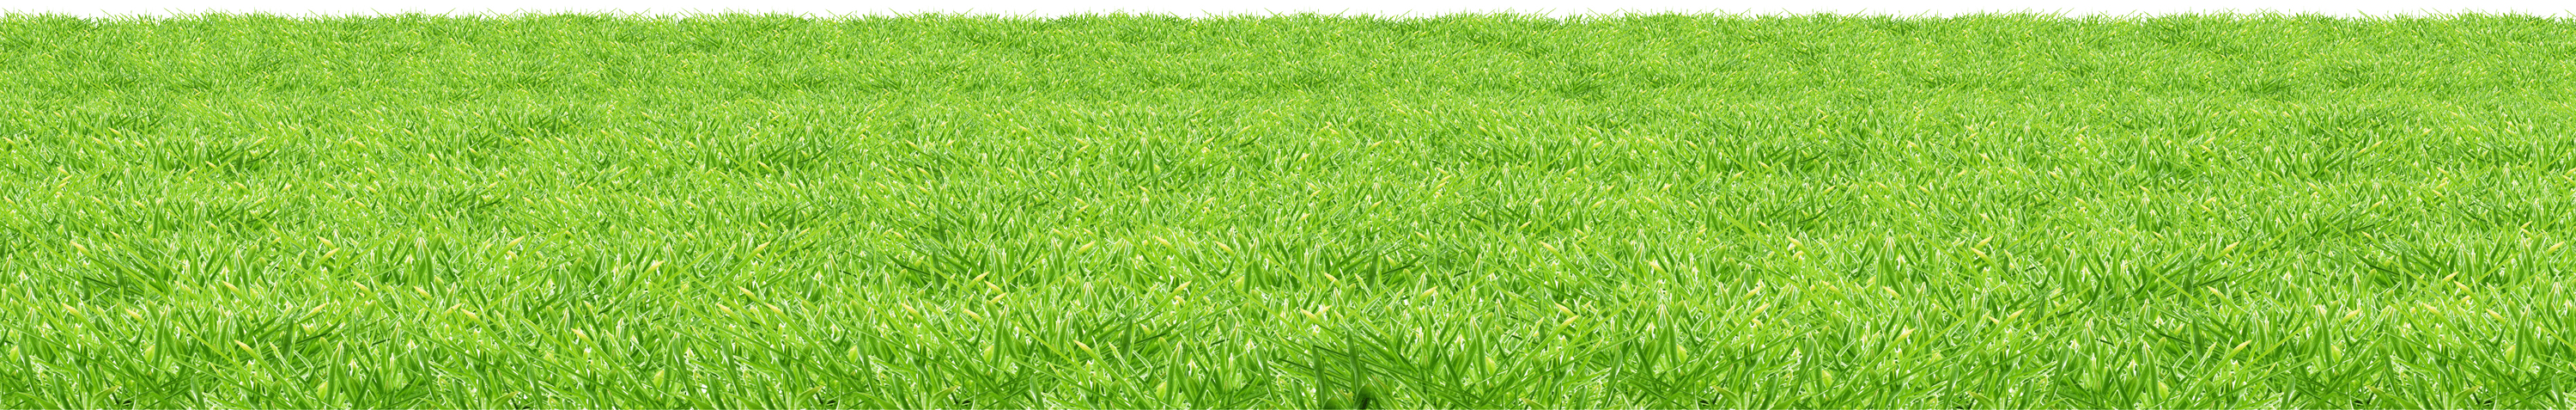 Tappetino a base di erba artificiale